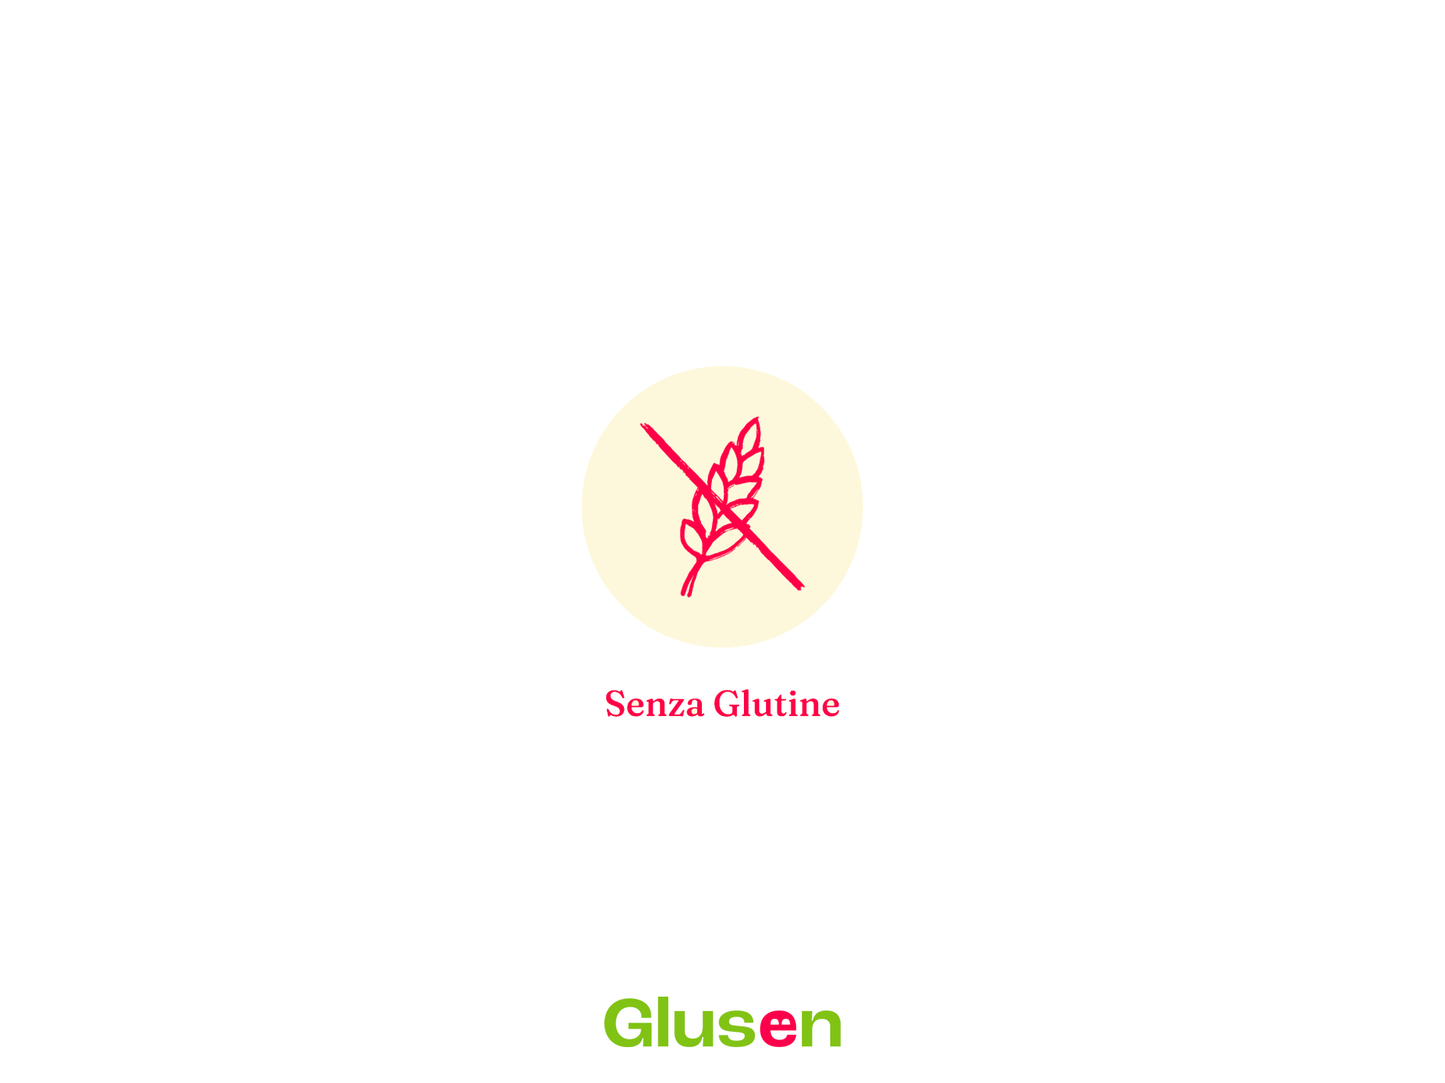 Si&no mini Gallette Quinoa e Amaranto Bio 80g senza glutine